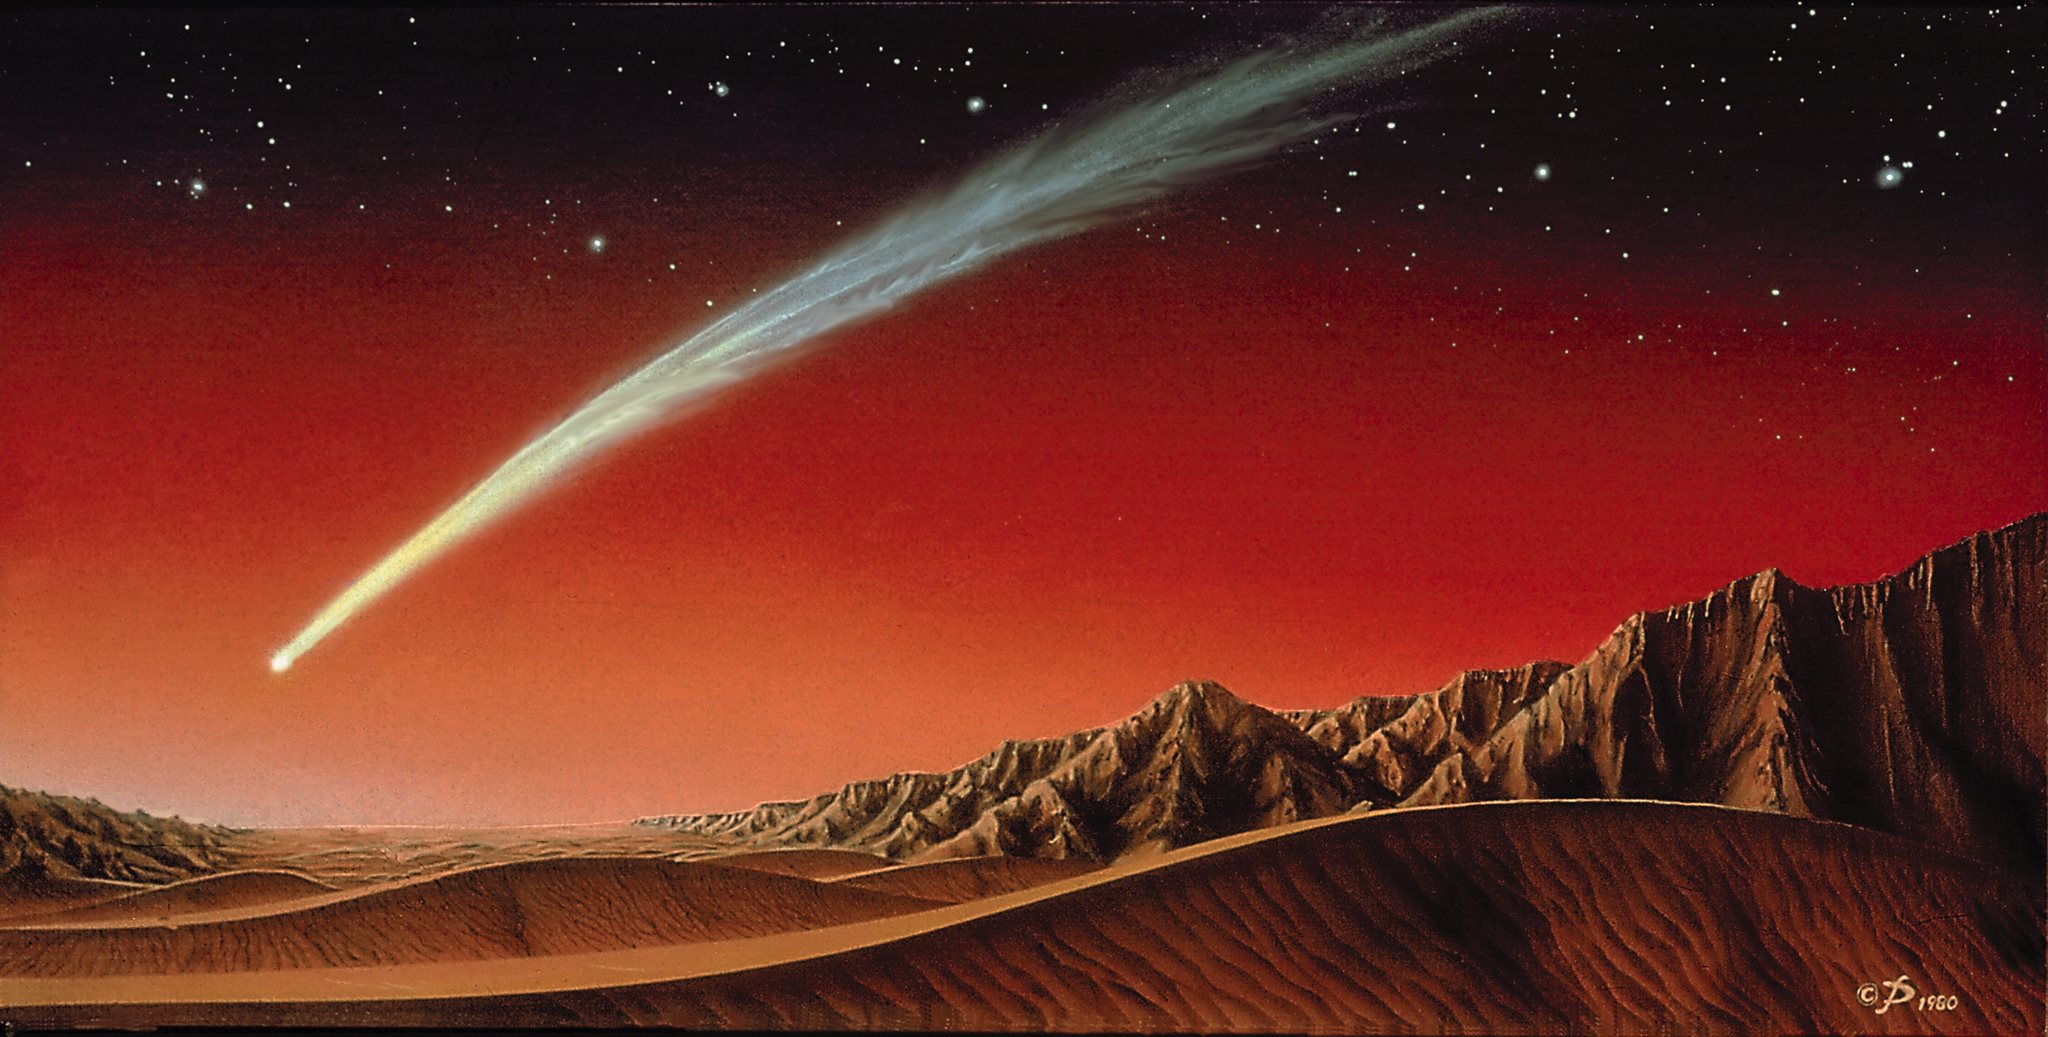 Comet_over_Mars